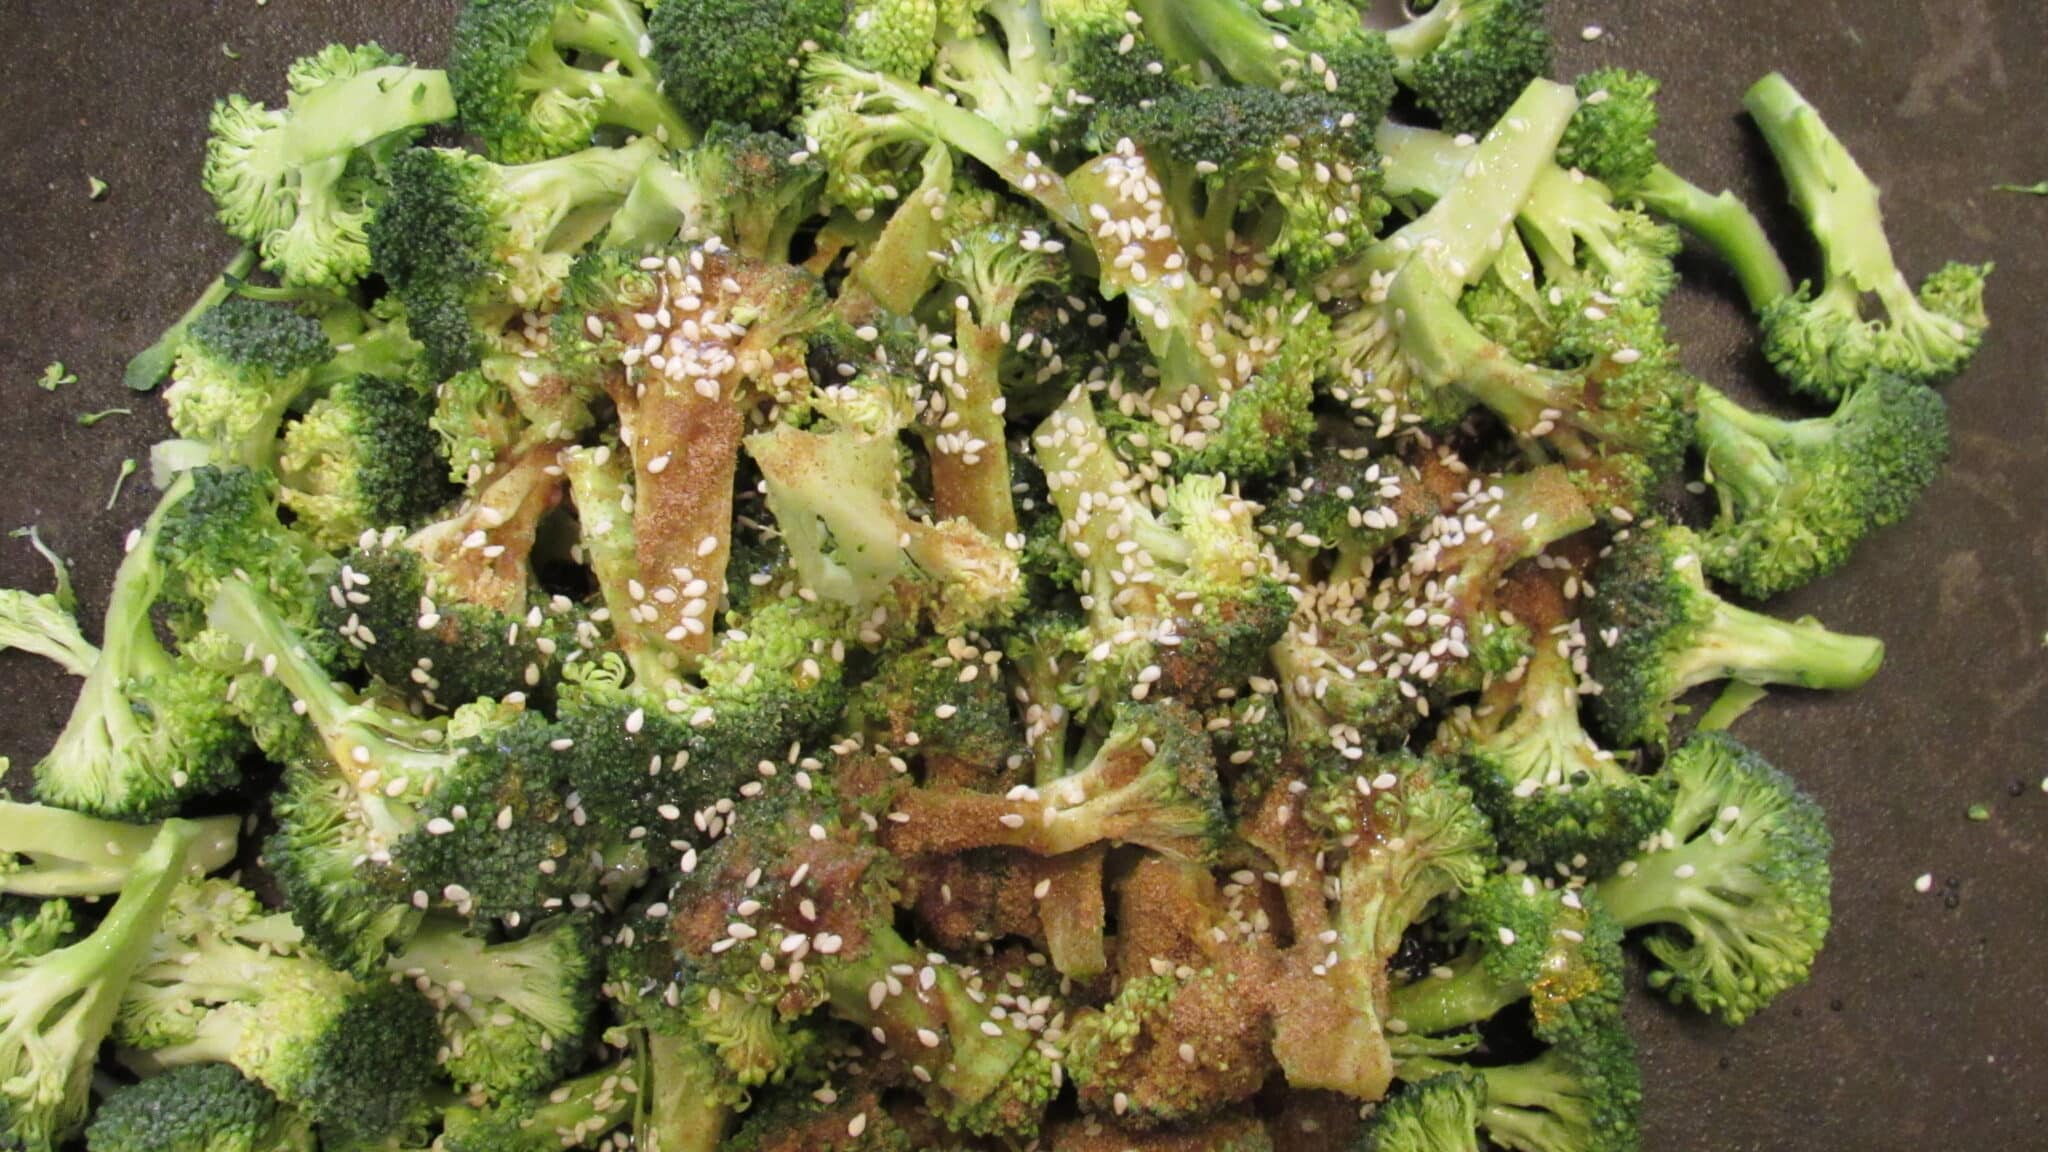 Broccoli florets are seasoned.